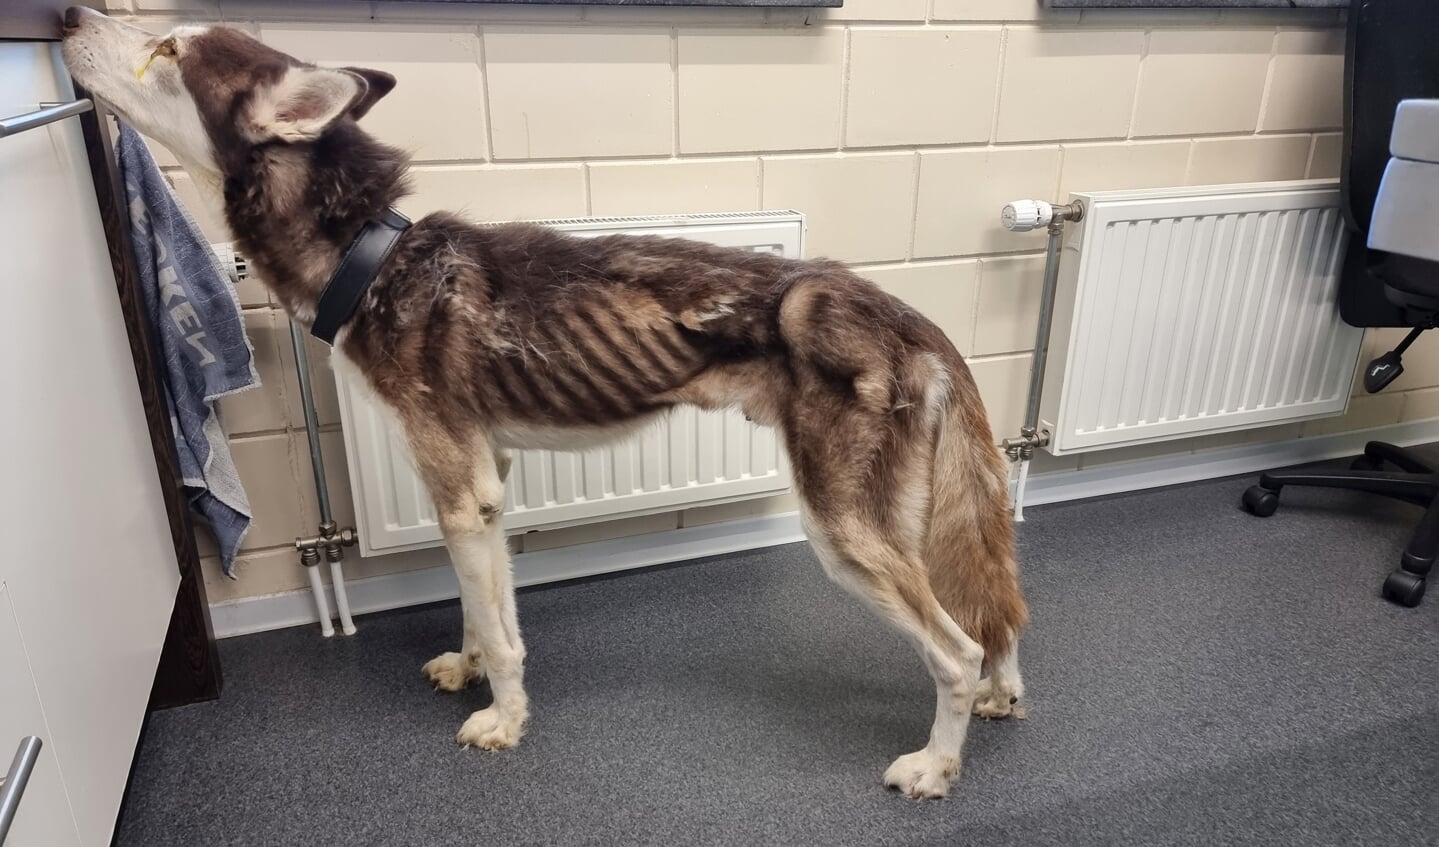 De LID (Landelijke Inspectiedienst Dierenbescherming) heeft een Siberische husky in beslag genomen die vel over been was